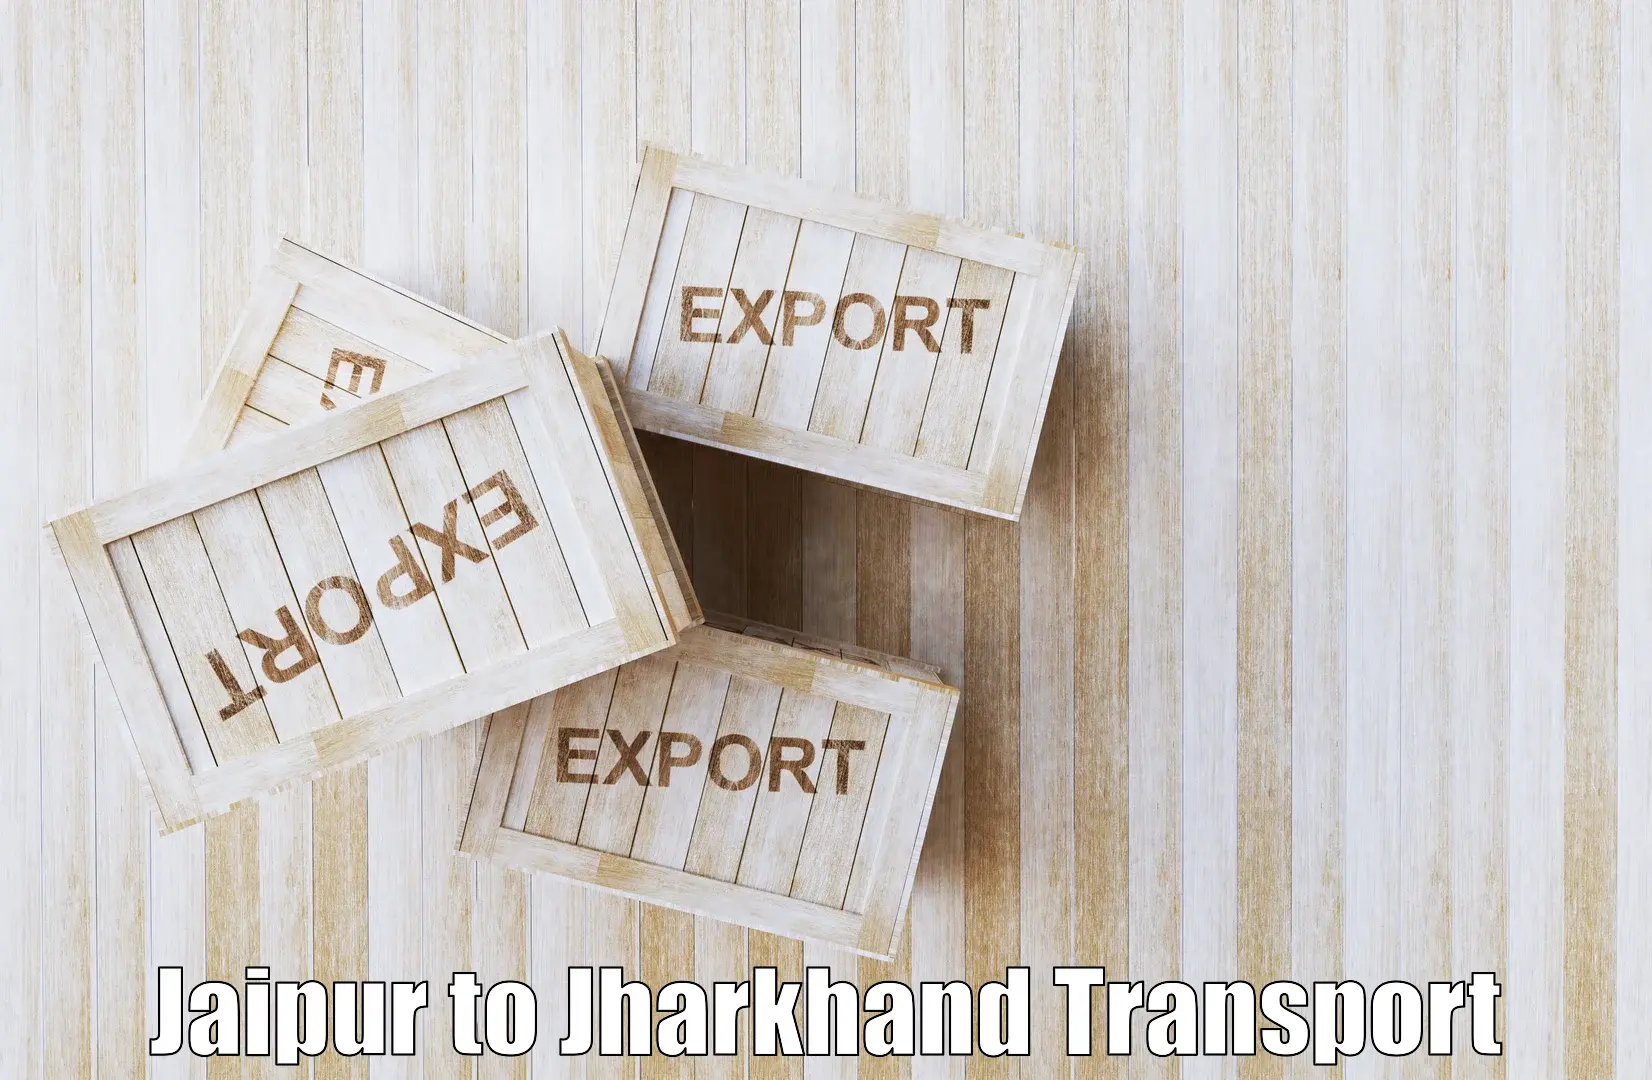 Transport shared services Jaipur to Medininagar